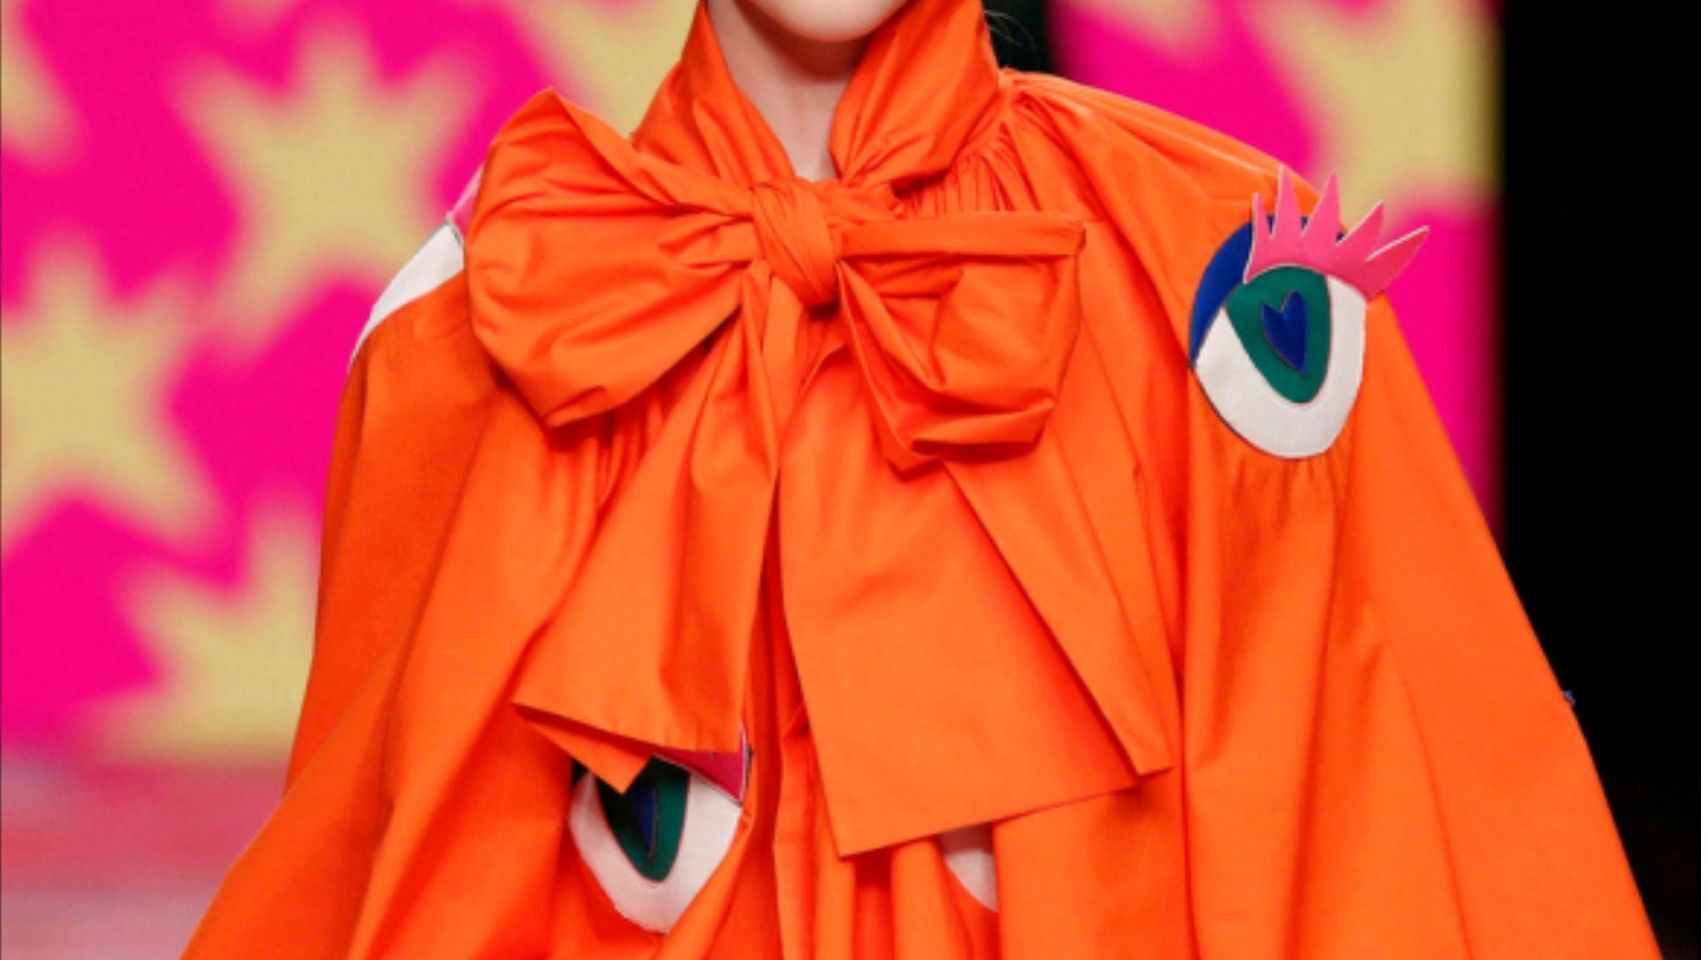 Naranja: cómo llevar el color que está revolucionando los ‘looks’ del año.